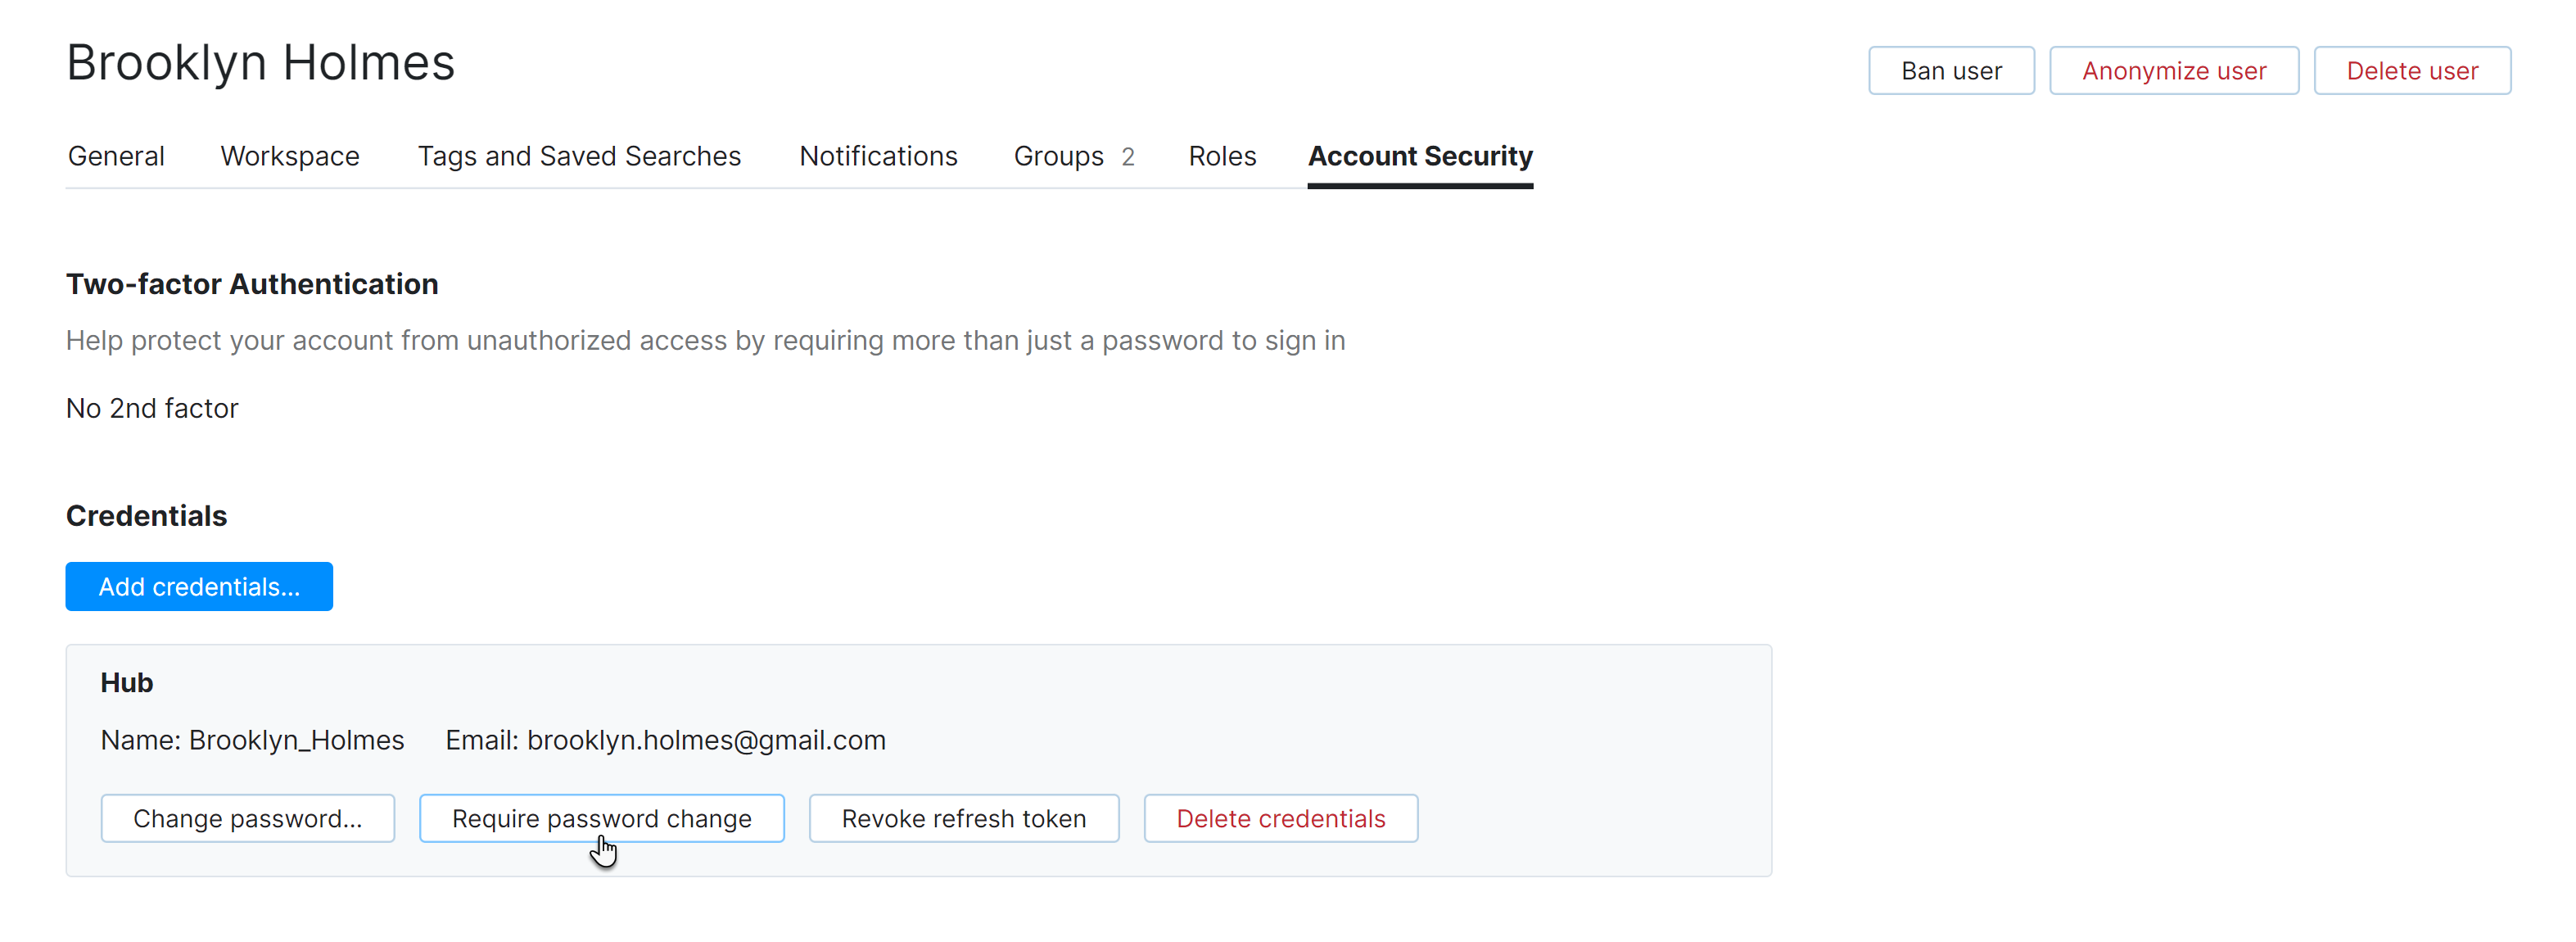 User require password change